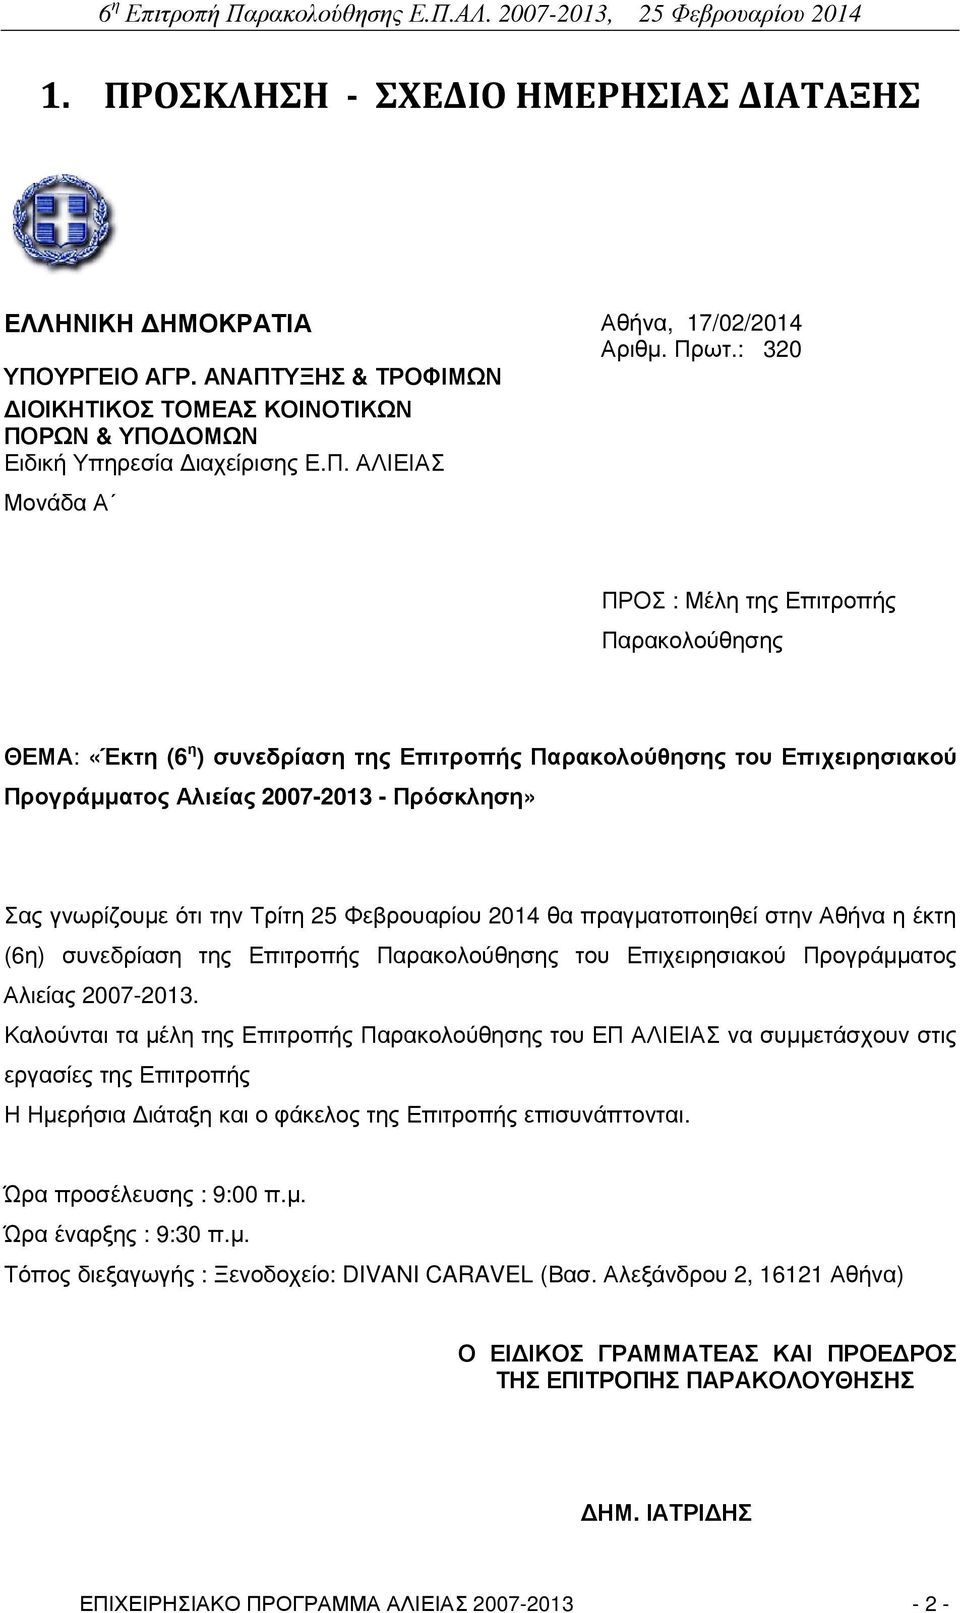 Τρίτη 25 Φεβρουαρίου 2014 θα πραγµατοποιηθεί στην Αθήνα η έκτη (6η) συνεδρίαση της Επιτροπής Παρακολούθησης του Επιχειρησιακού Προγράµµατος Αλιείας 2007-2013.